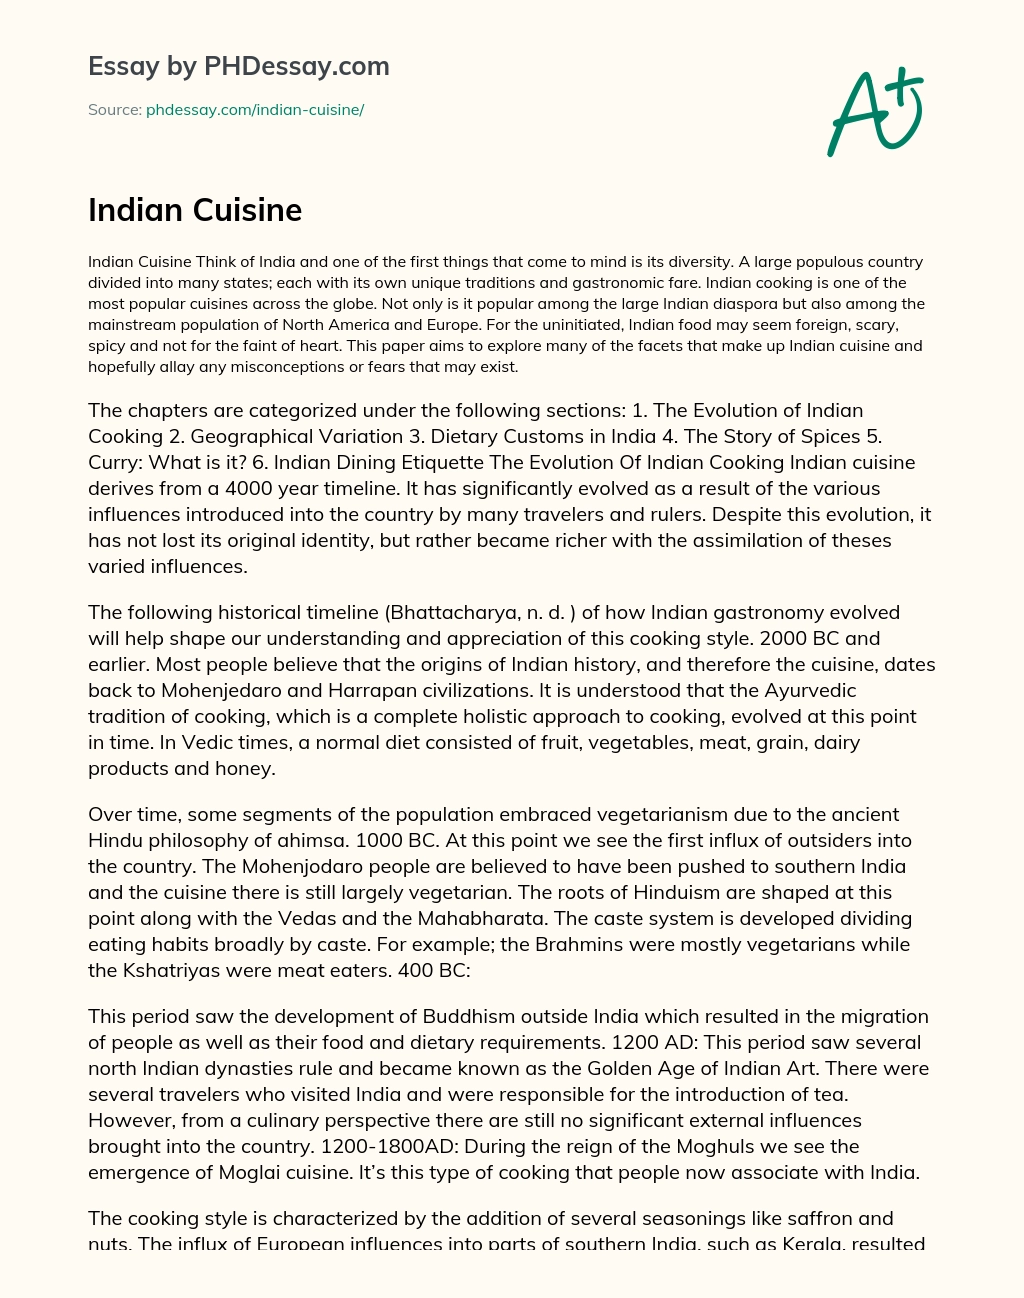 Indian Cuisine essay